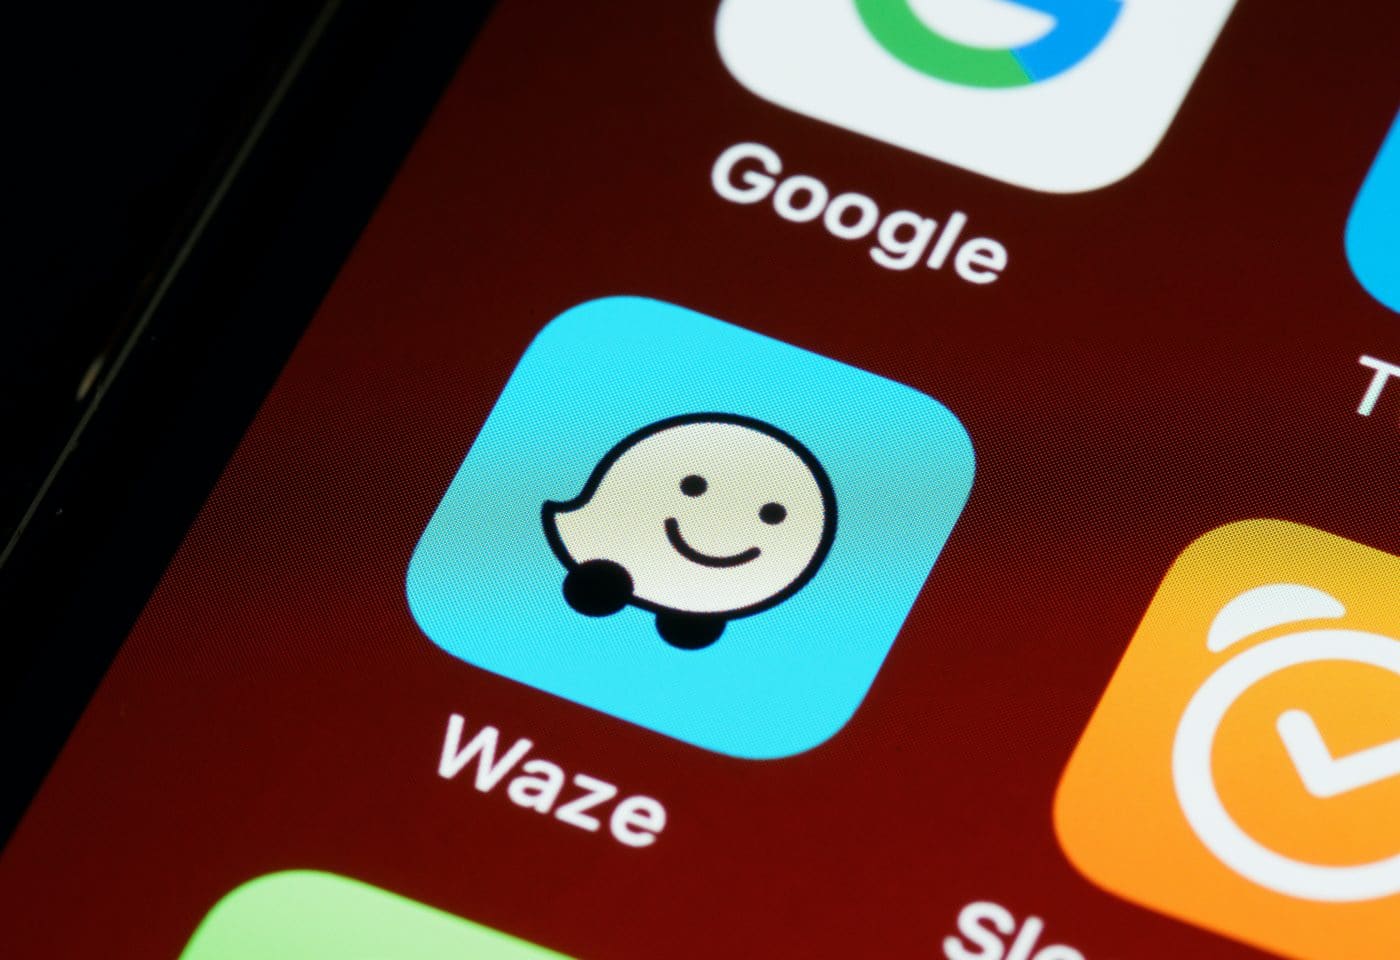 Le logo de l'application Waze.